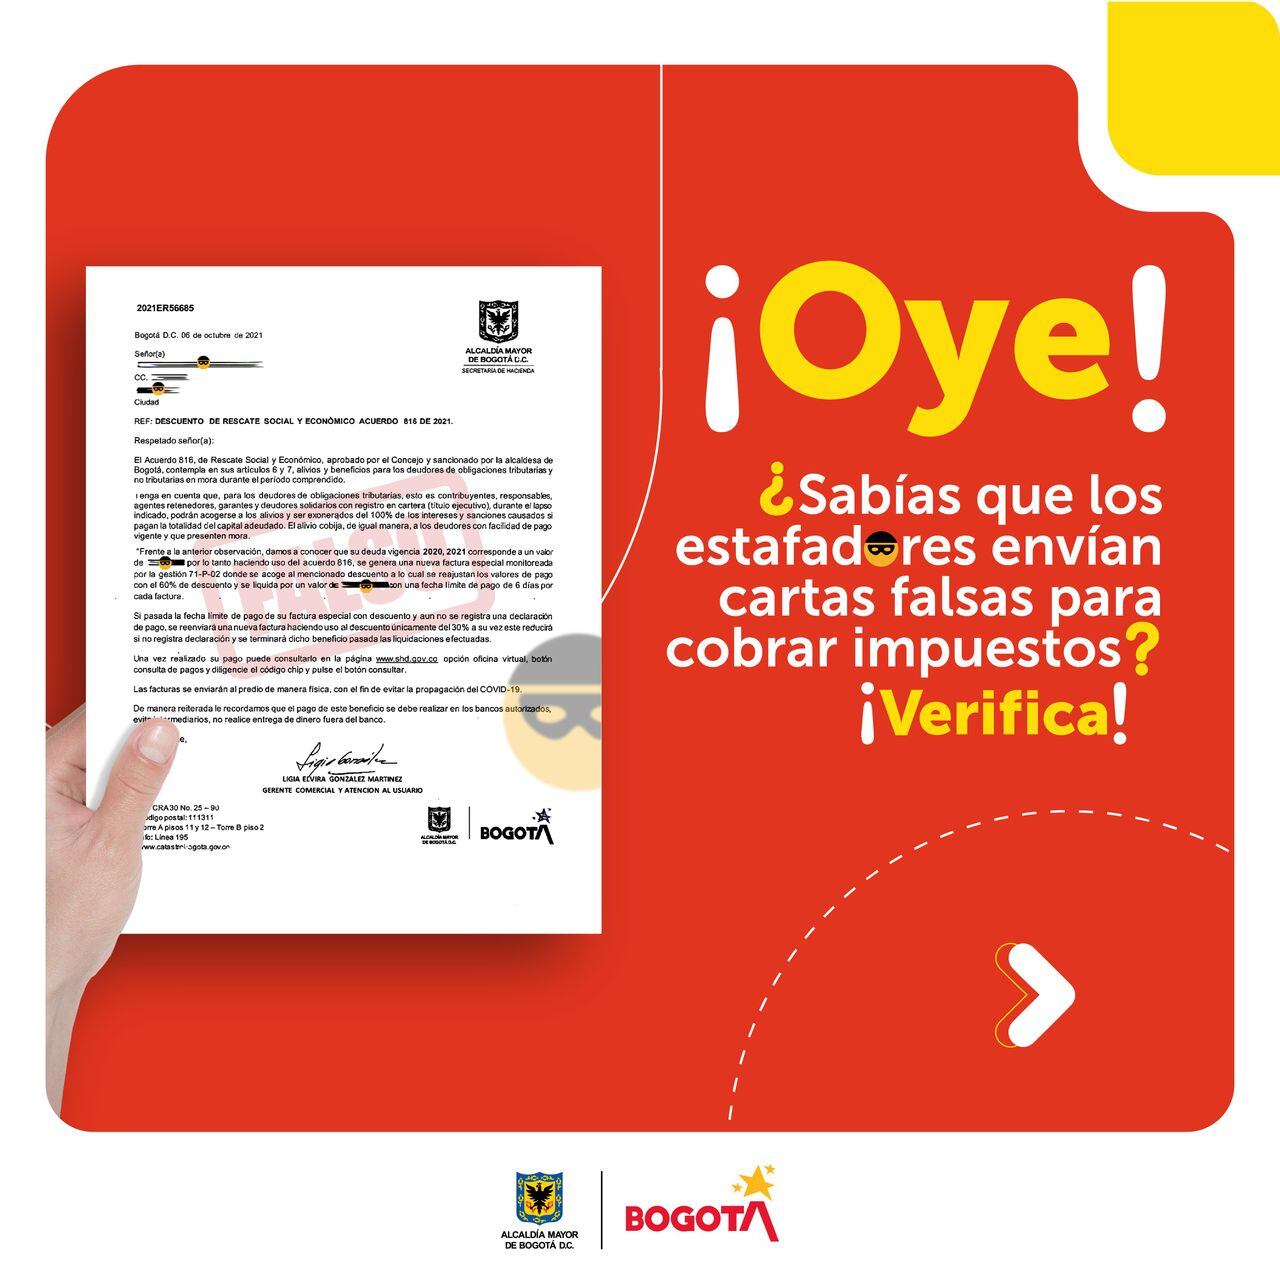 cartas falsas sbre cobro de impuestos en Bogotá?